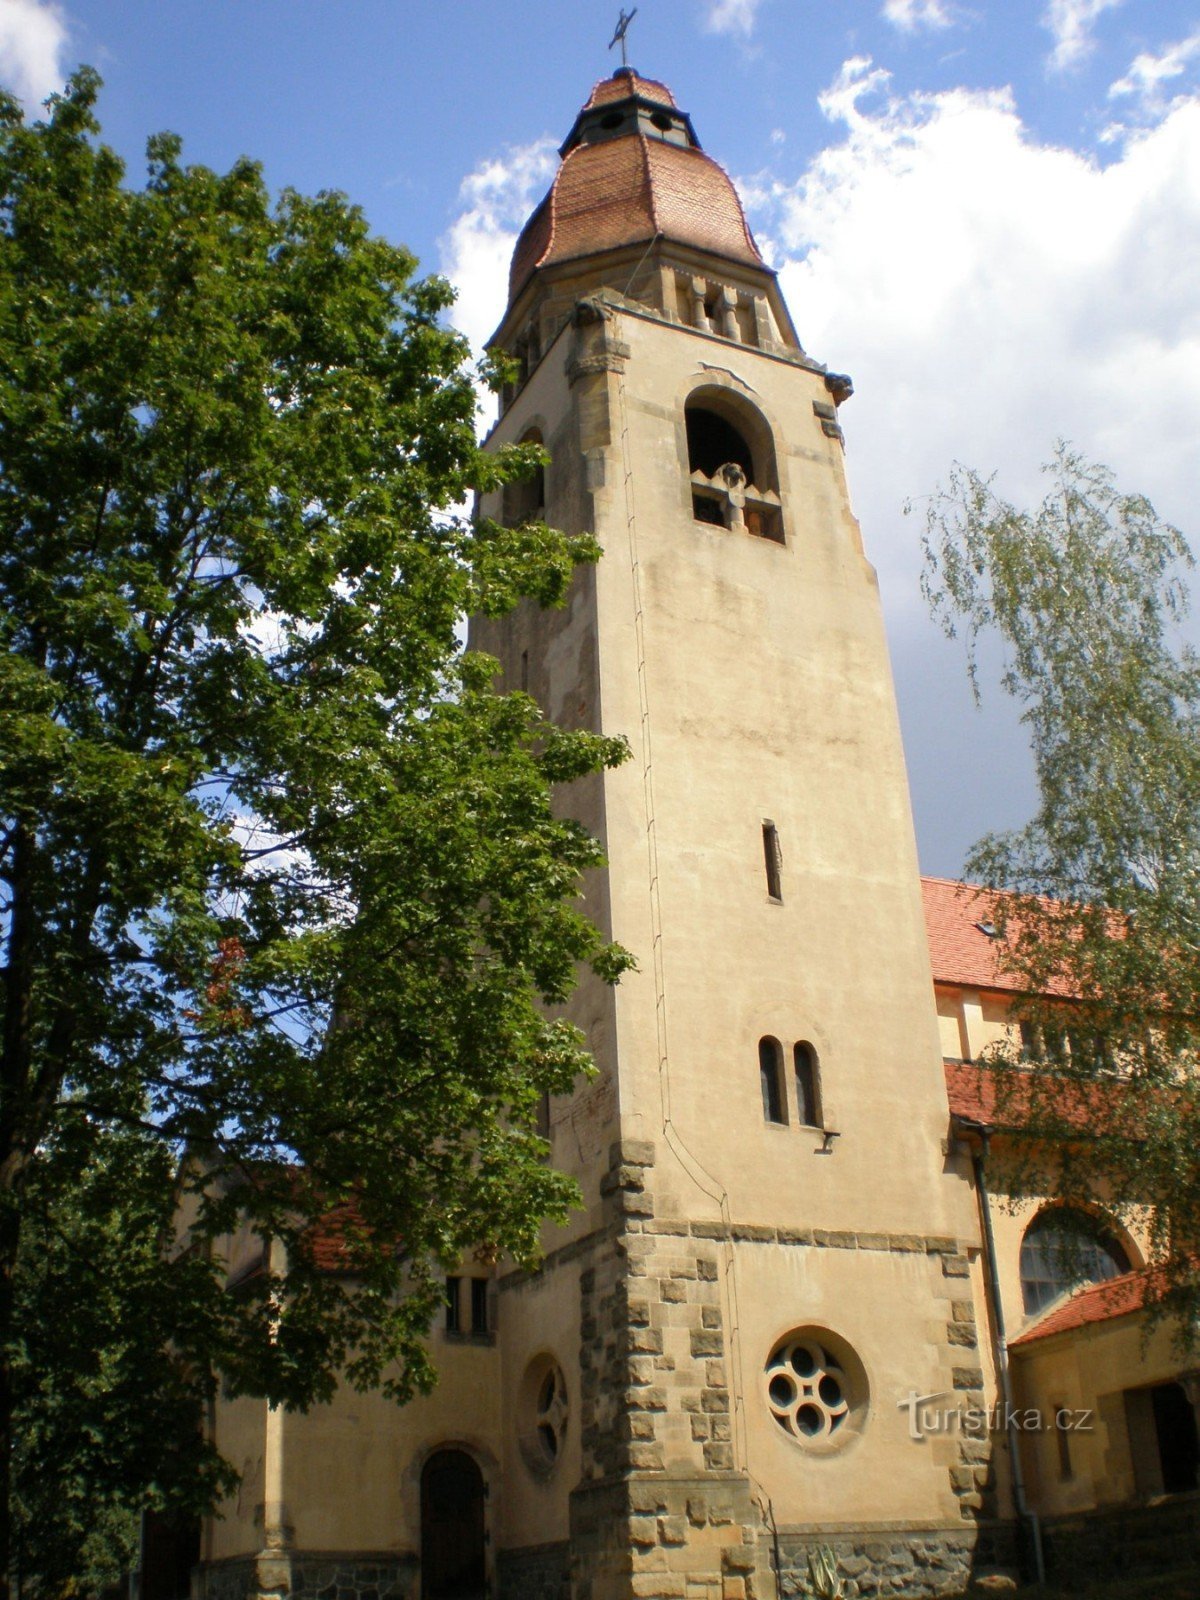 Štěchovice - Kirche St. Jan Nepomuký